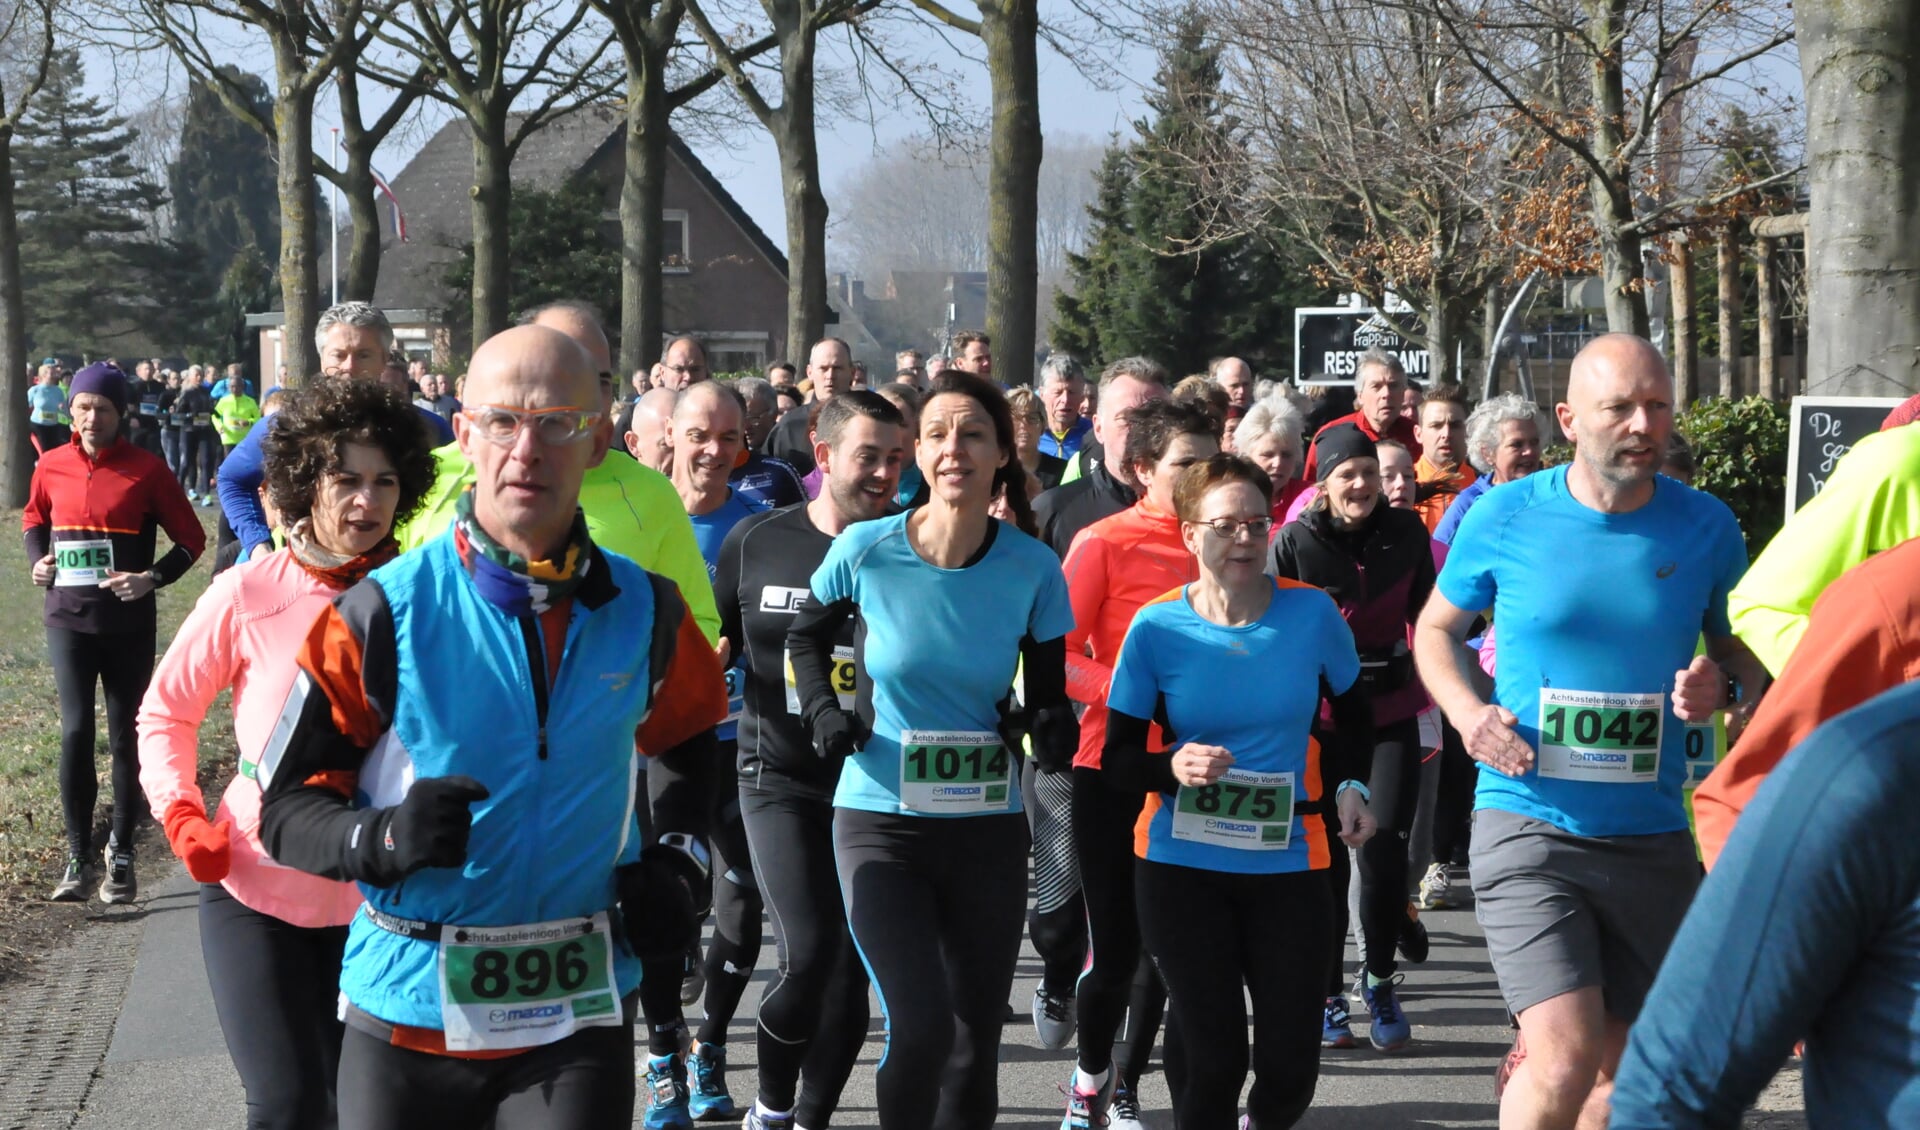 Ruim 1100 deelnemers namen deel aan de 31ste editie van de Vordense Achtkastelenloop. Foto: Theo Jansen.